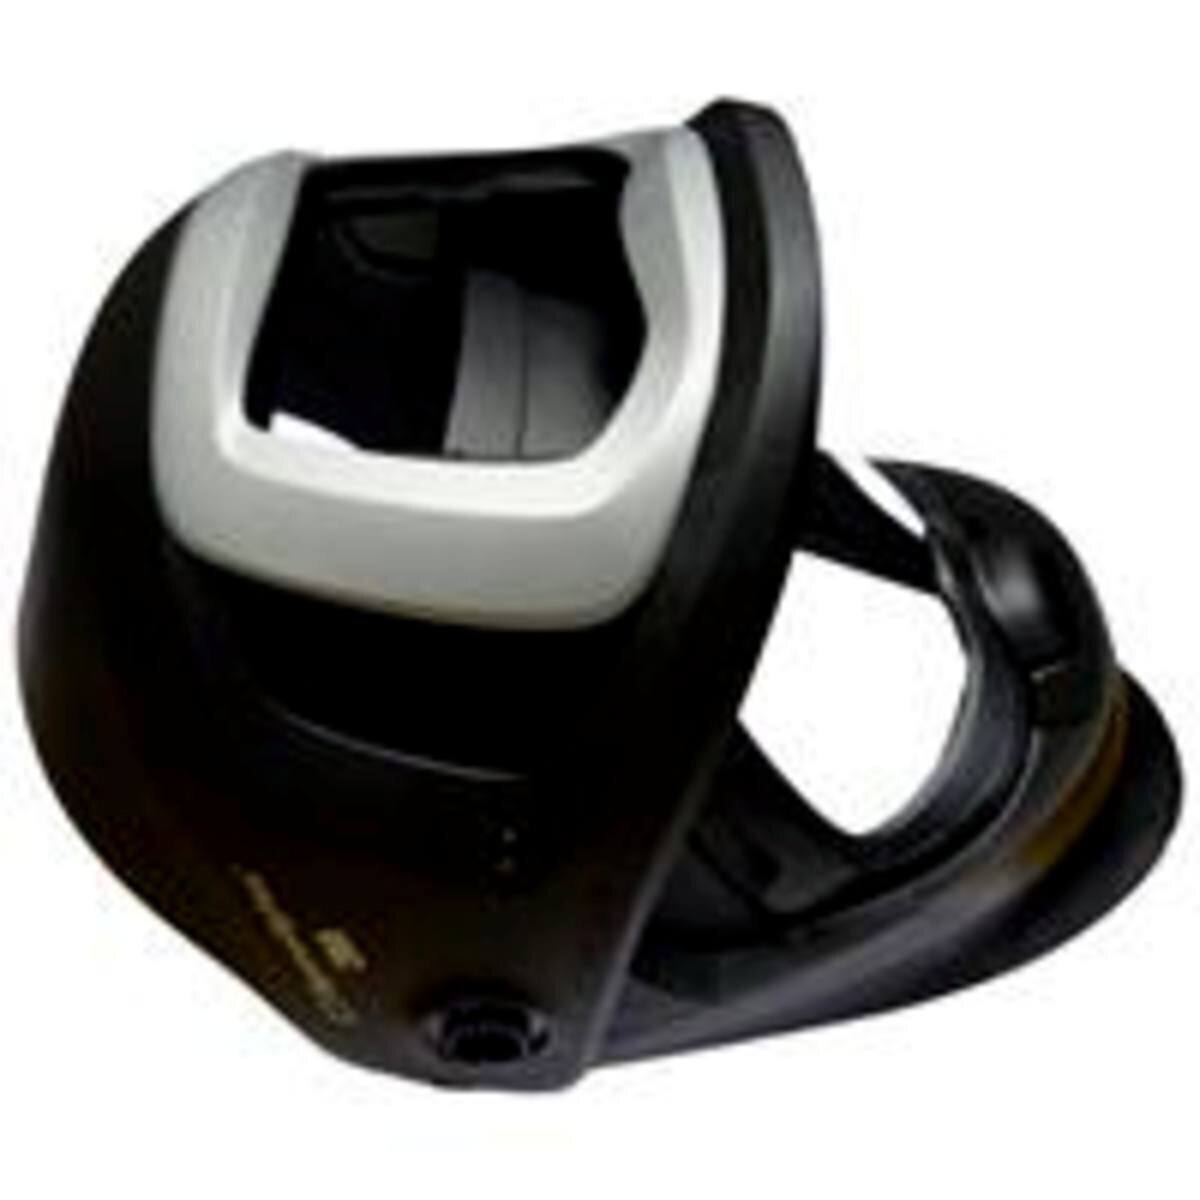 Máscara de soldadura 3M Speedglas 9100 FX Air sin filtro automático de soldadura ADF, con ventana lateral, sin cinta para la cabeza #541890